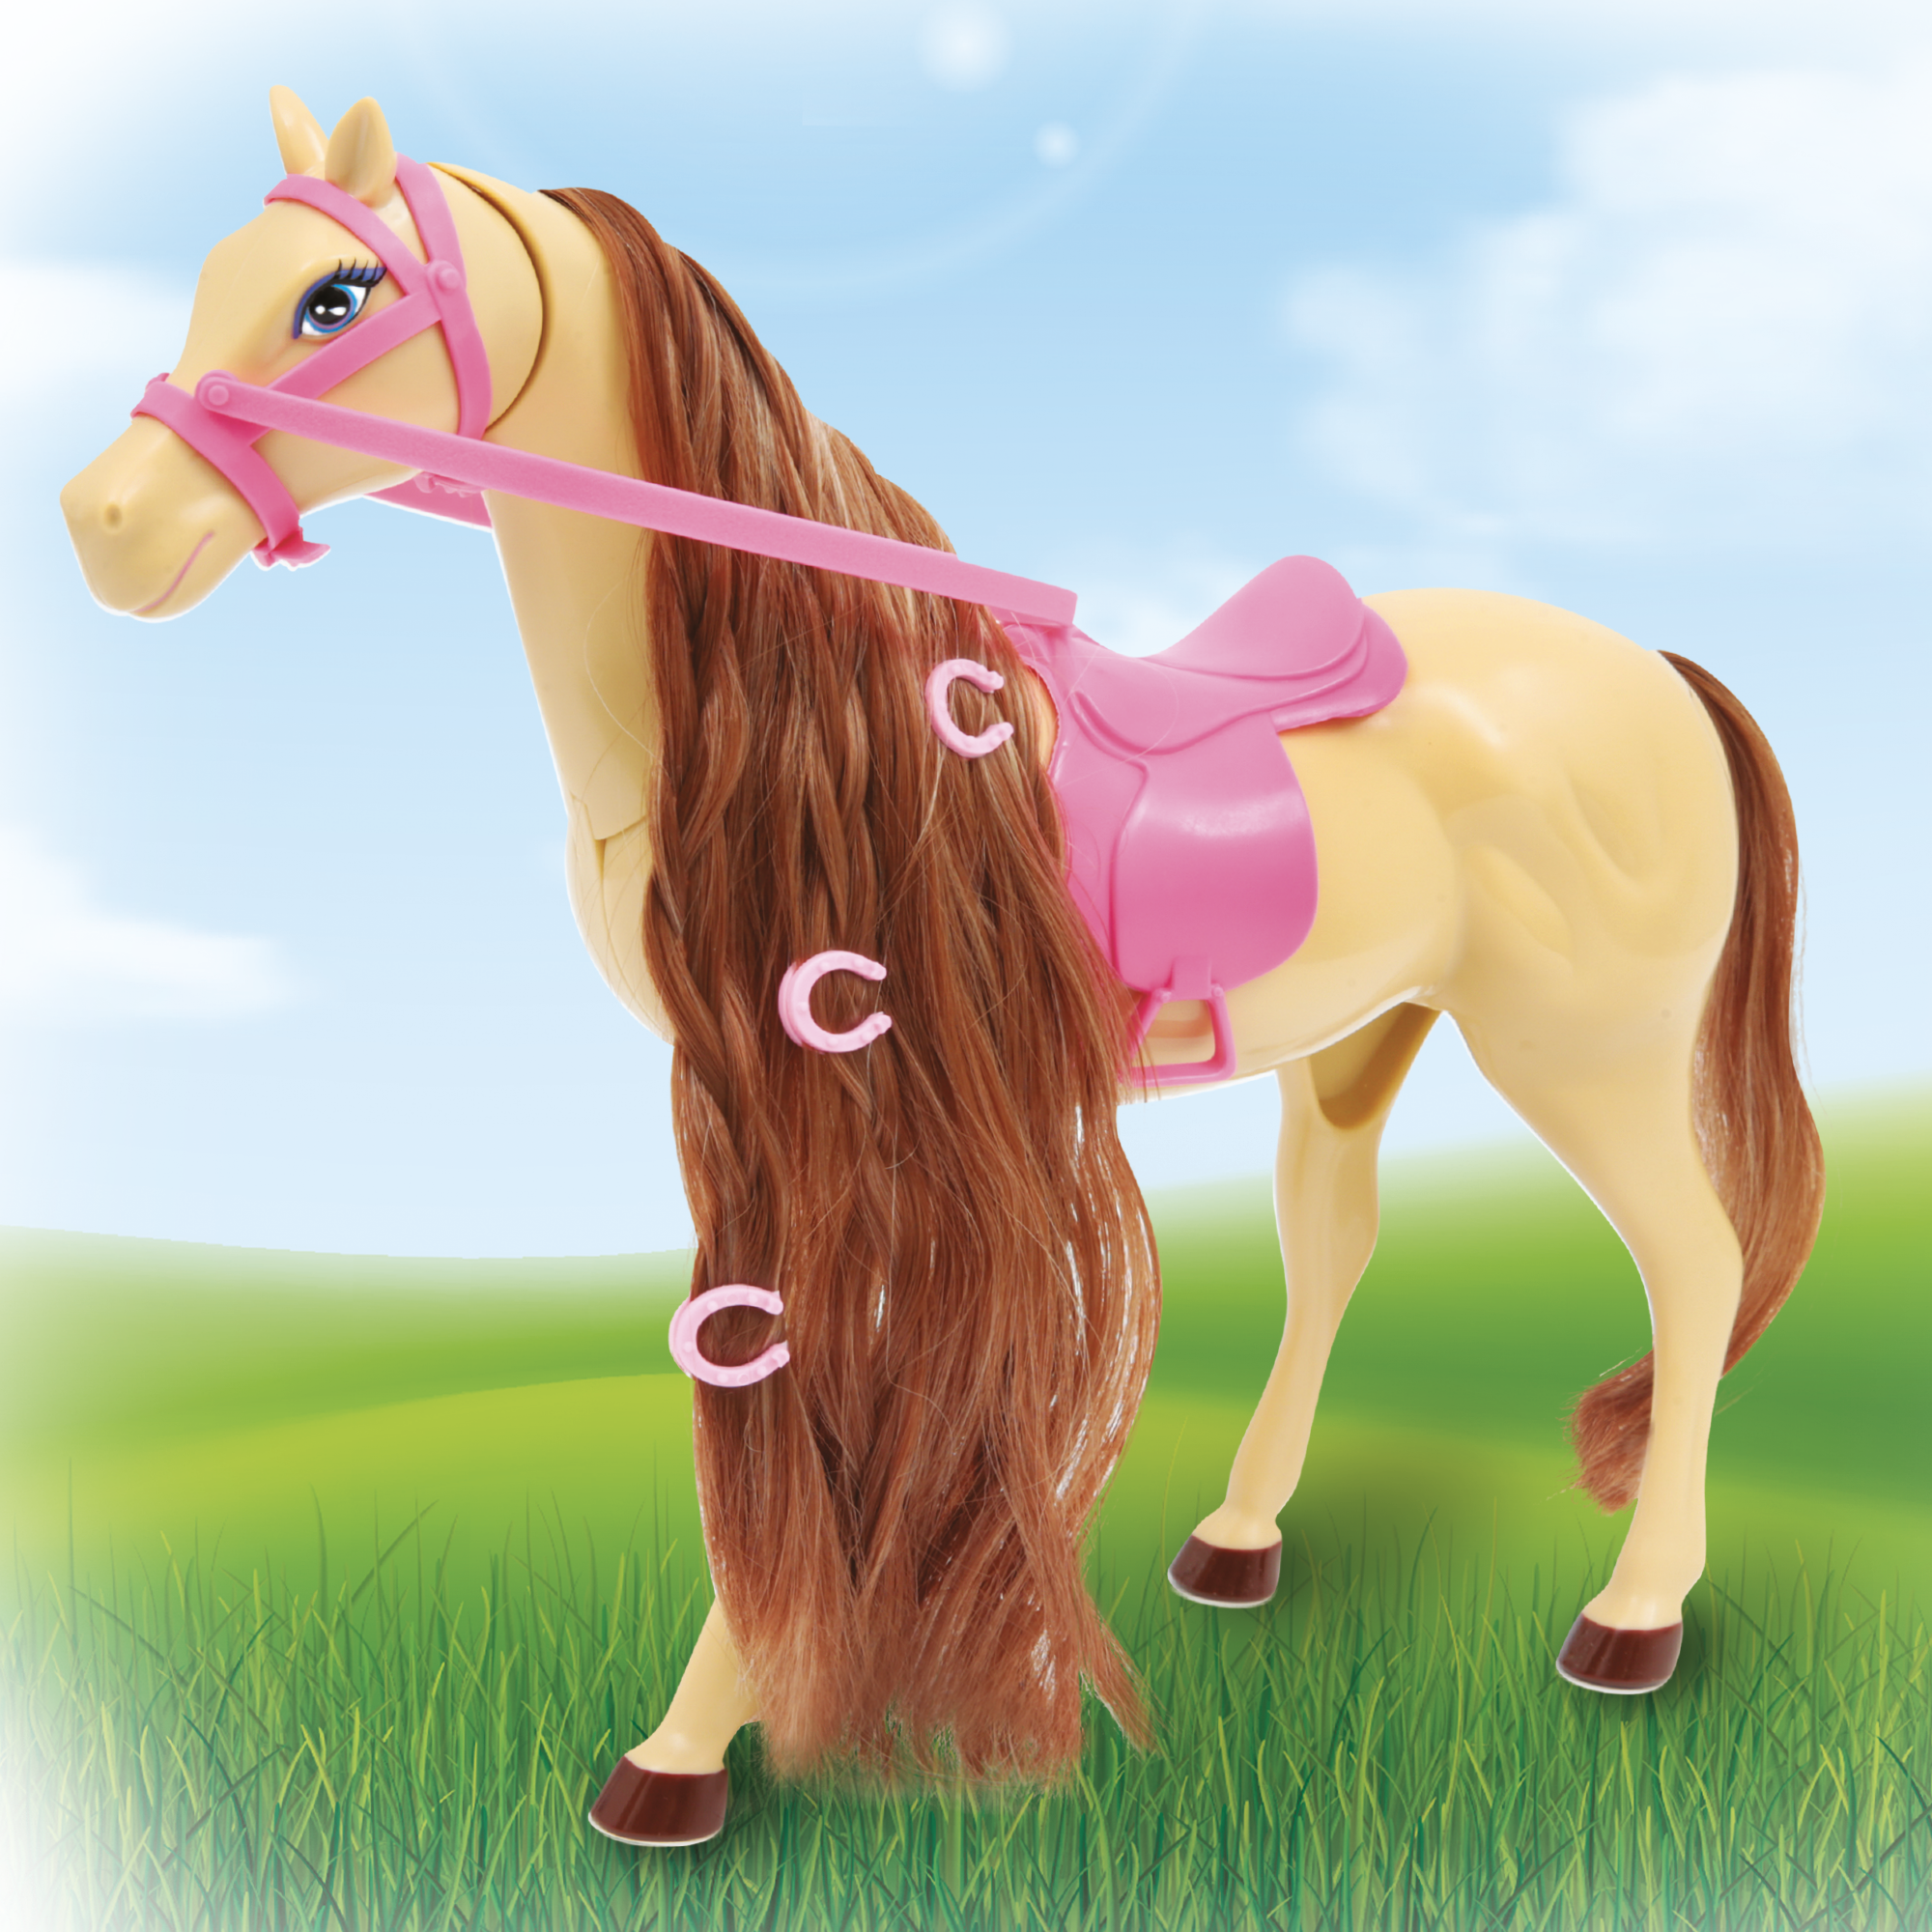 Lollybeauty horse - LOLLY